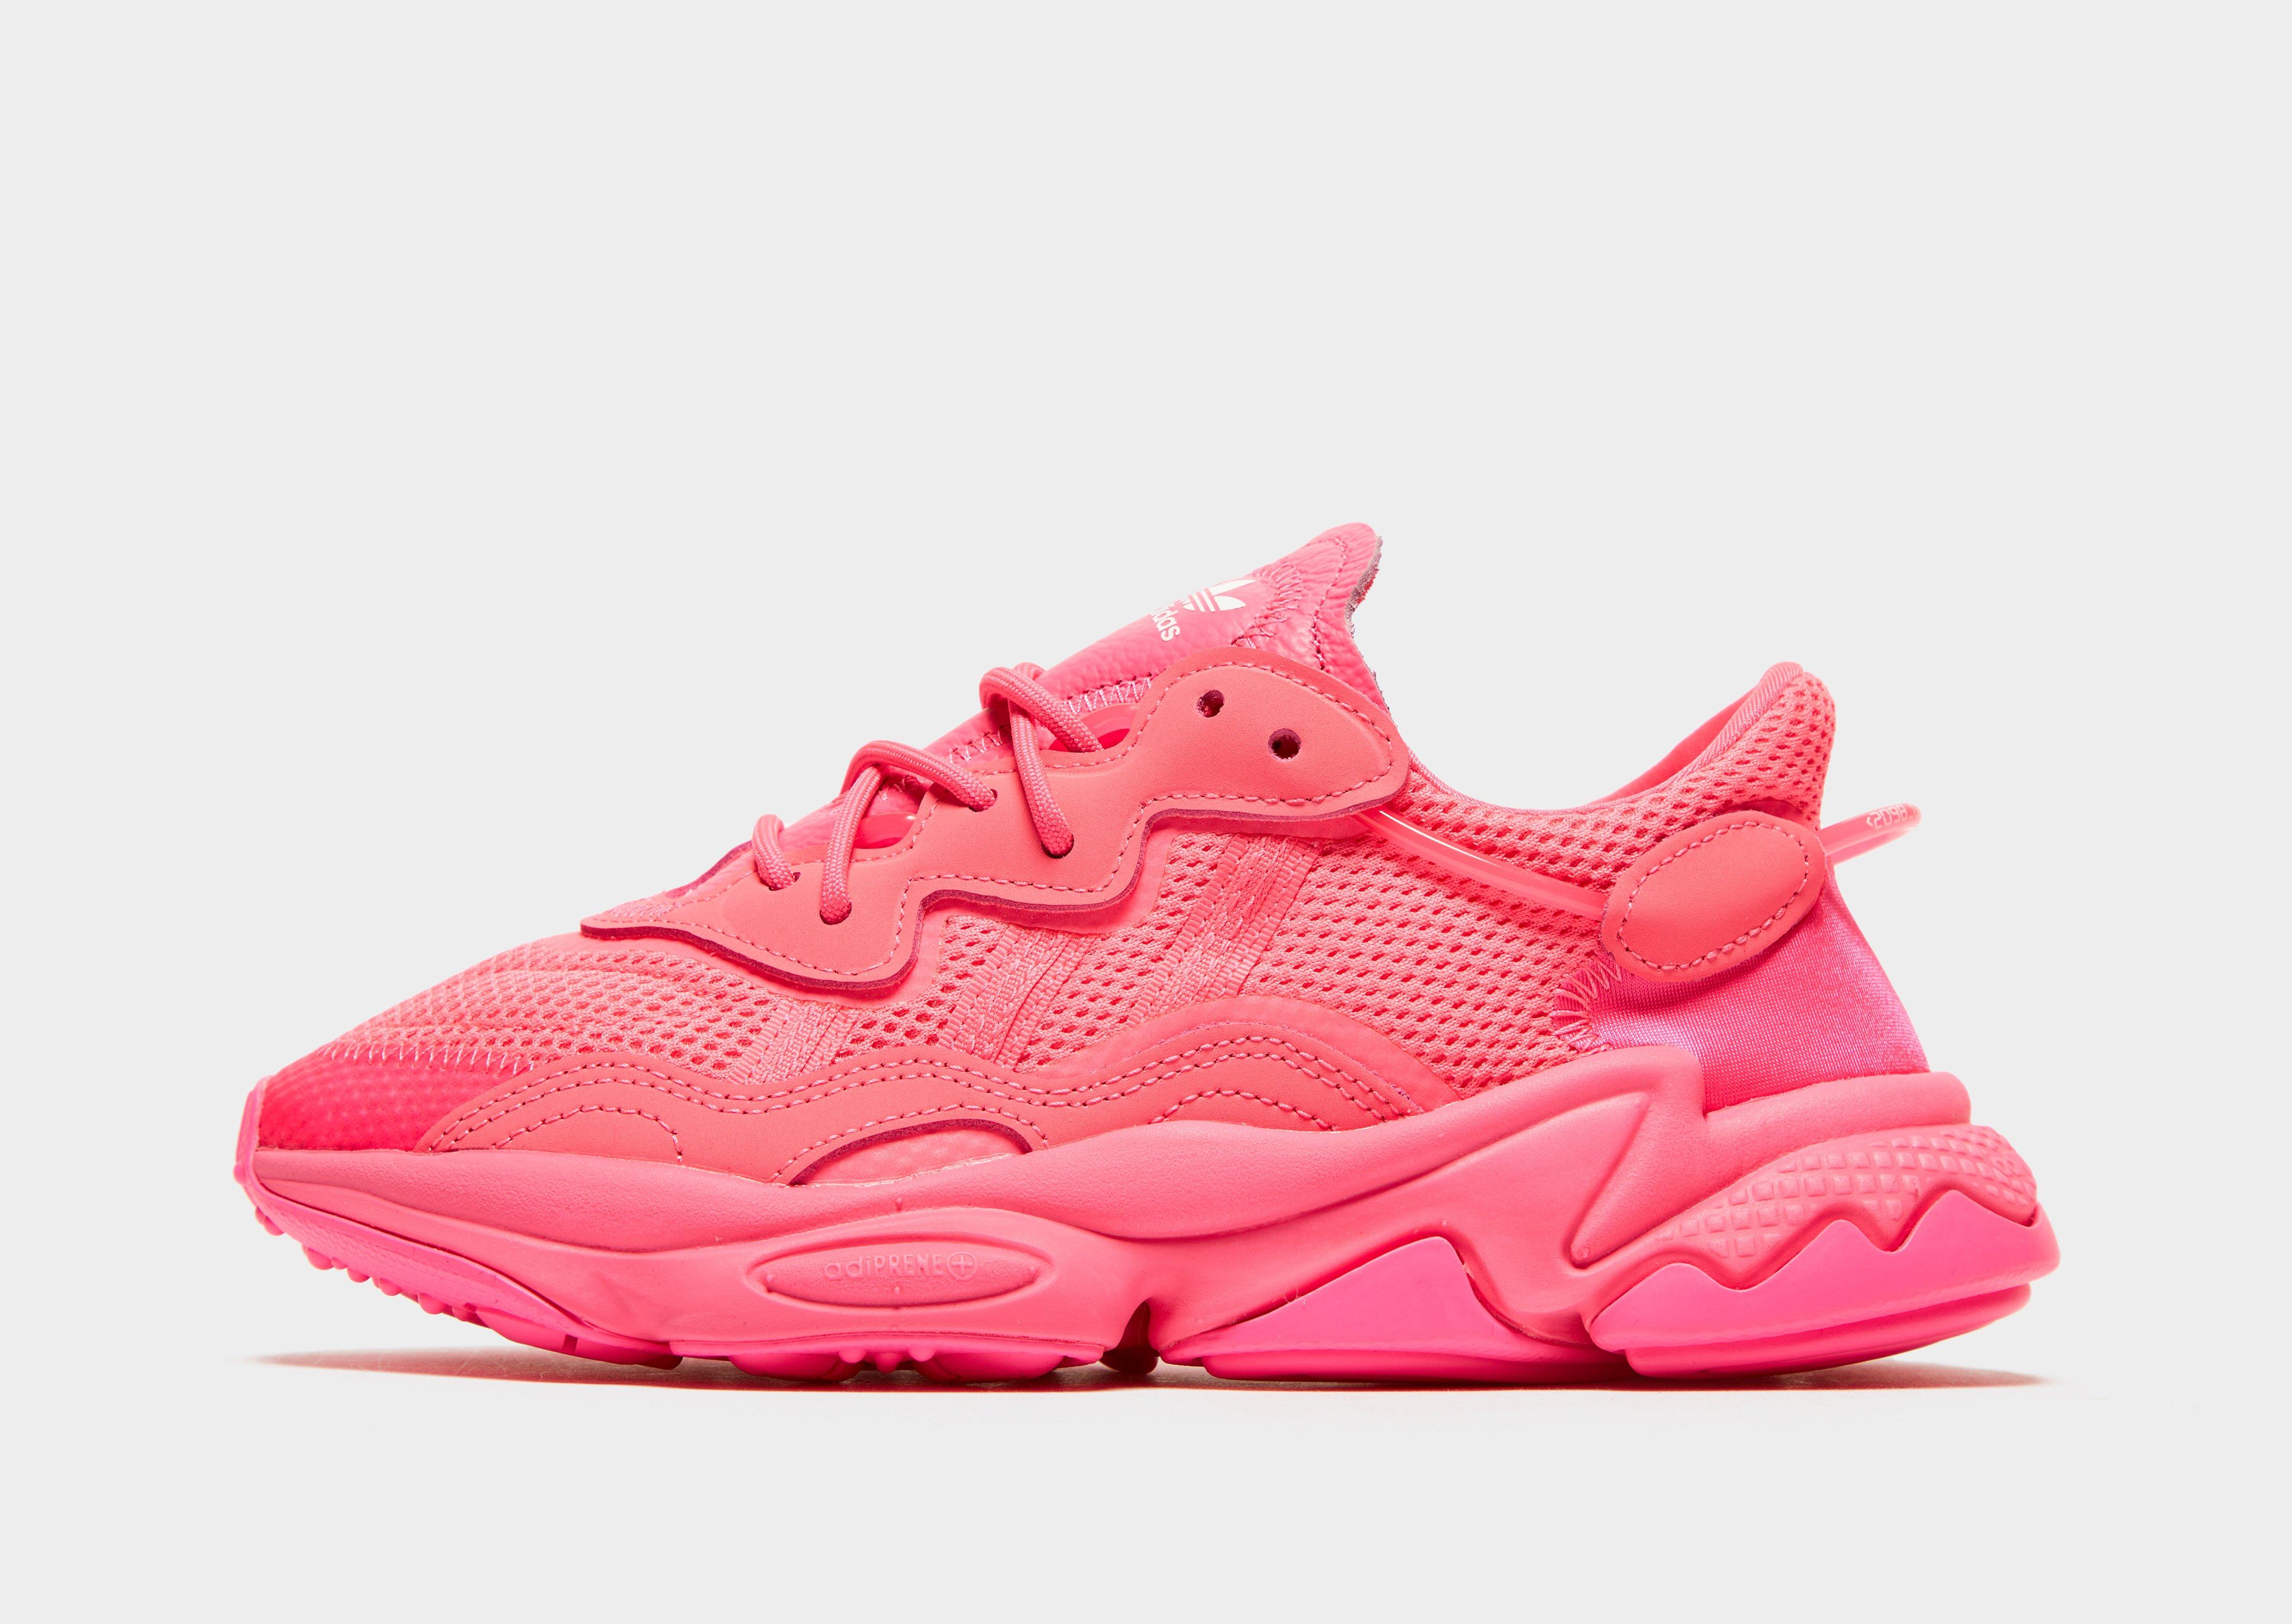 adidas ozweegos pink